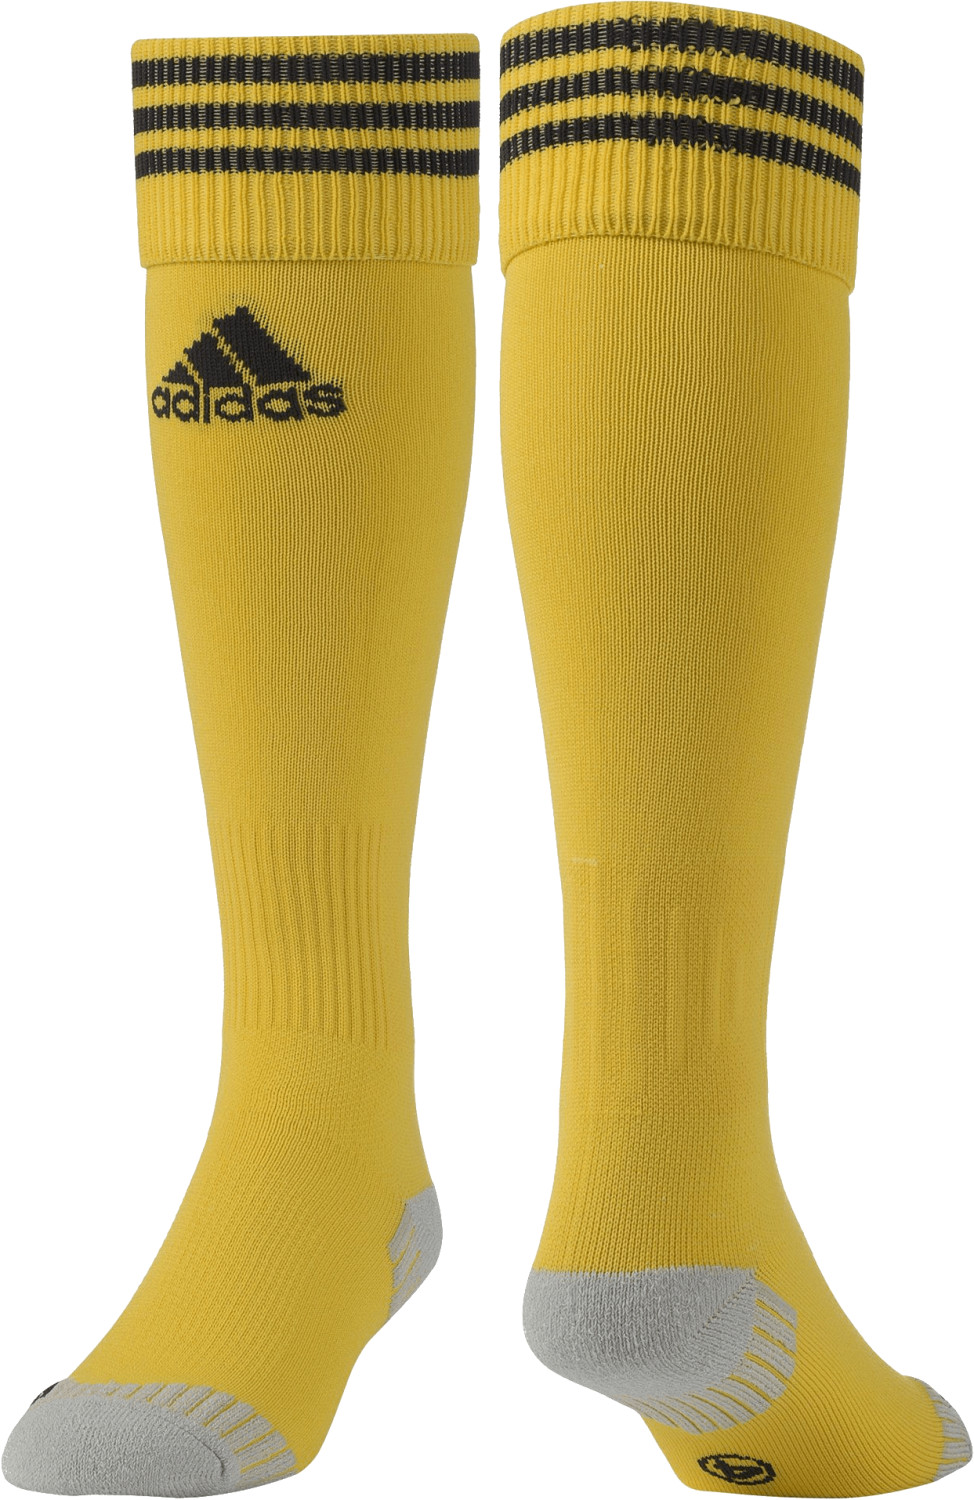 Adidas Adisocks 12 Football Socks sunshine/black